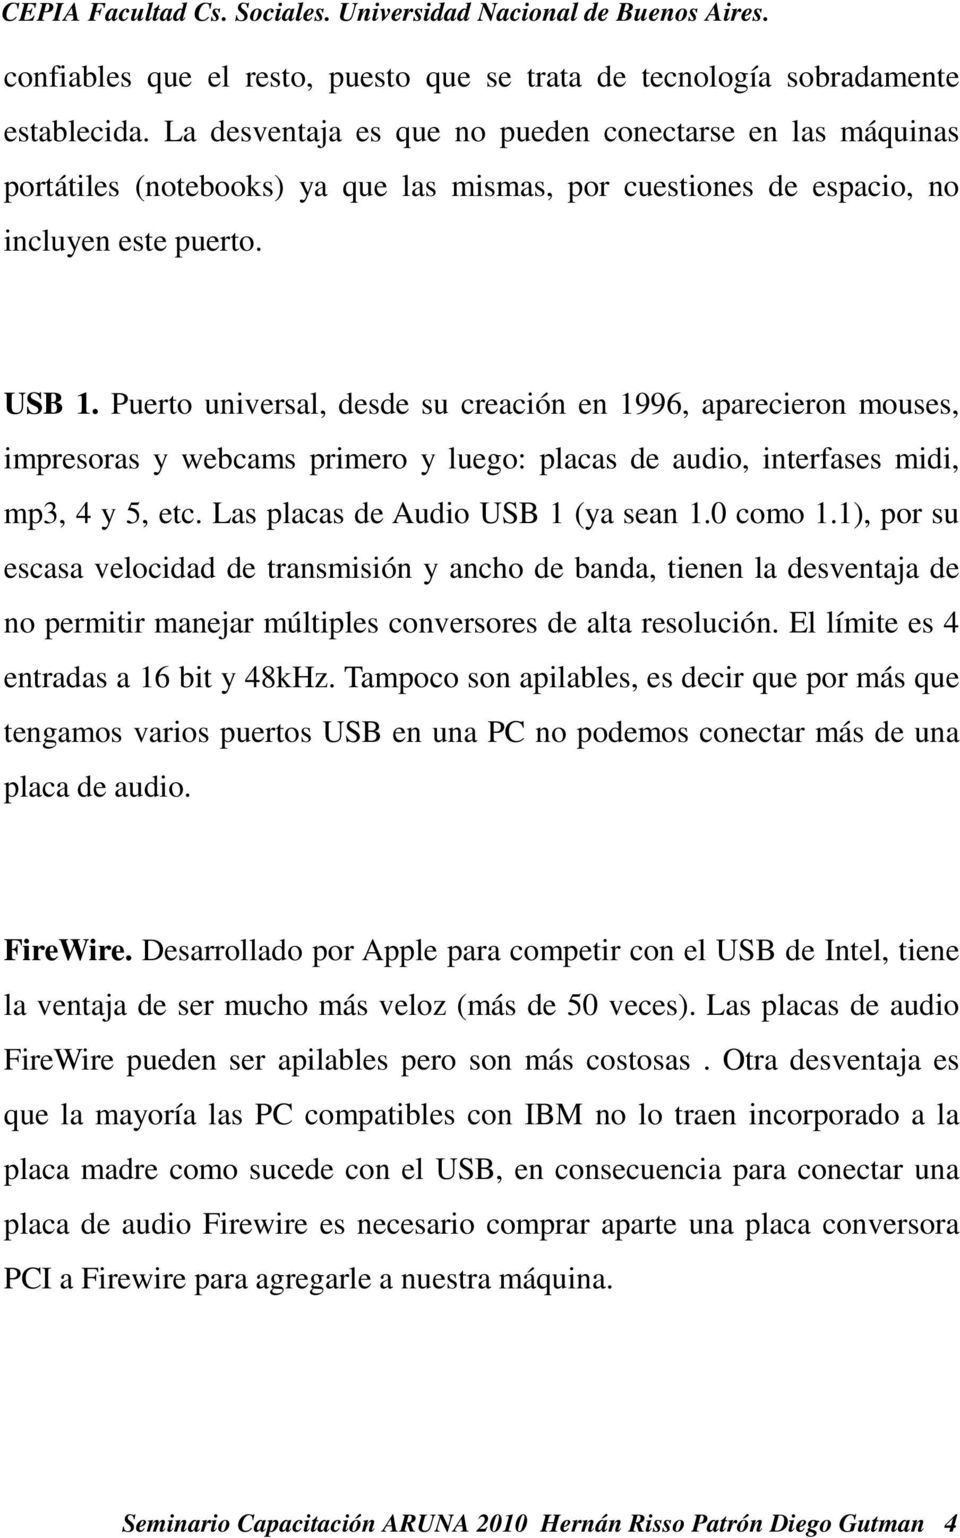 Puerto universal, desde su creación en 1996, aparecieron mouses, impresoras y webcams primero y luego: placas de audio, interfases midi, mp3, 4 y 5, etc. Las placas de Audio USB 1 (ya sean 1.0 como 1.